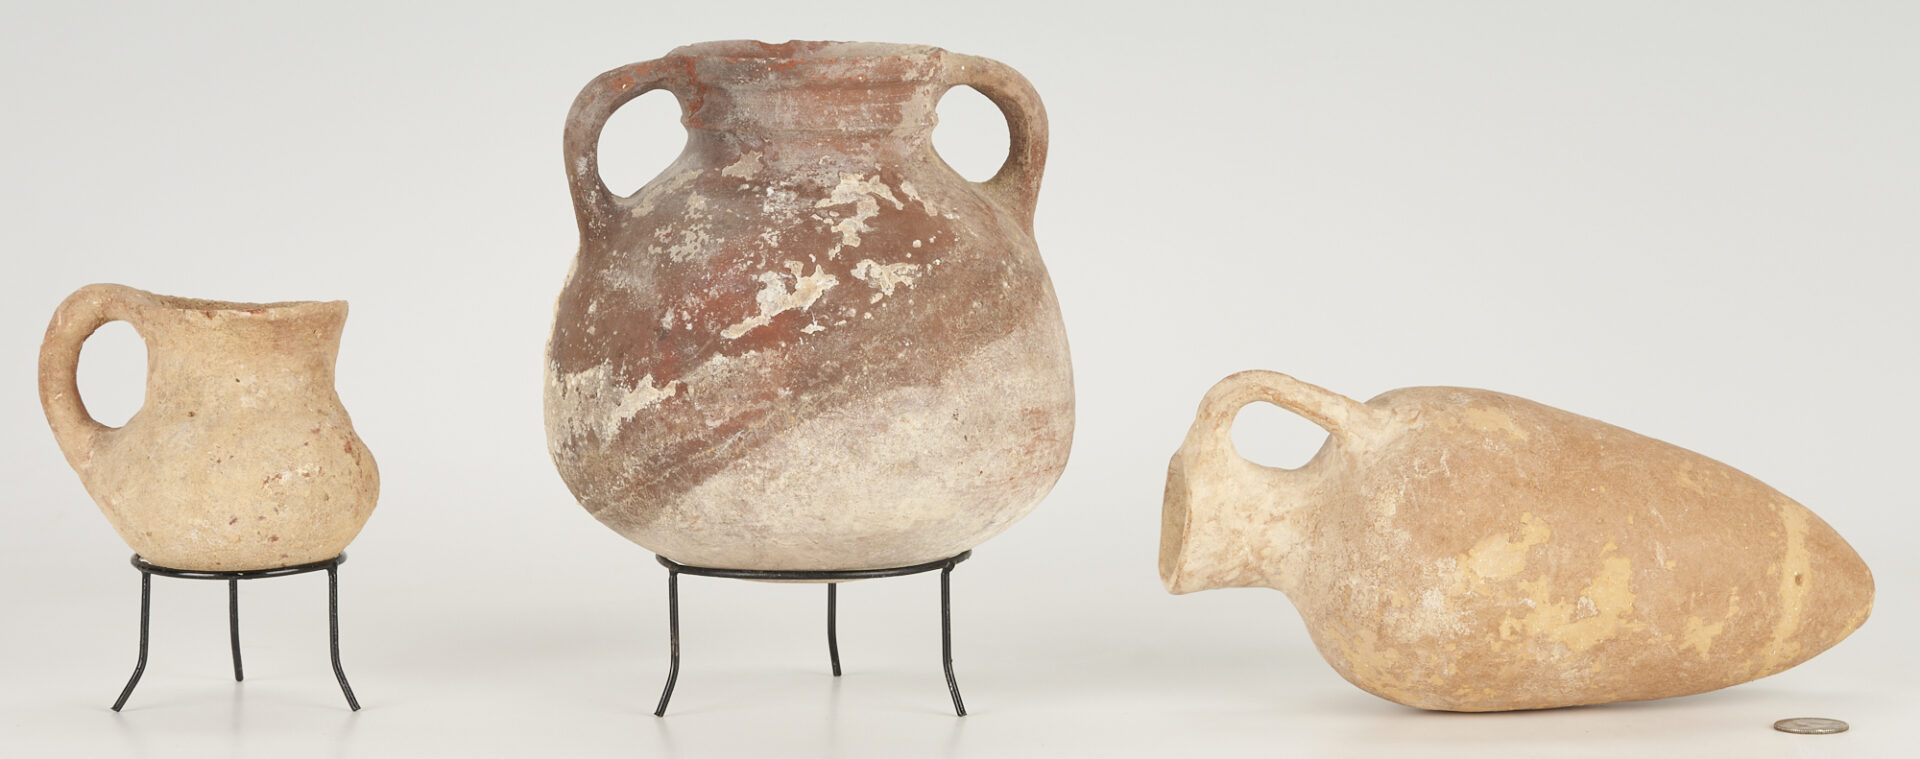 Lot 254: 3 Ancient Israeli Ceramic Vessels incl. Amphora Vase